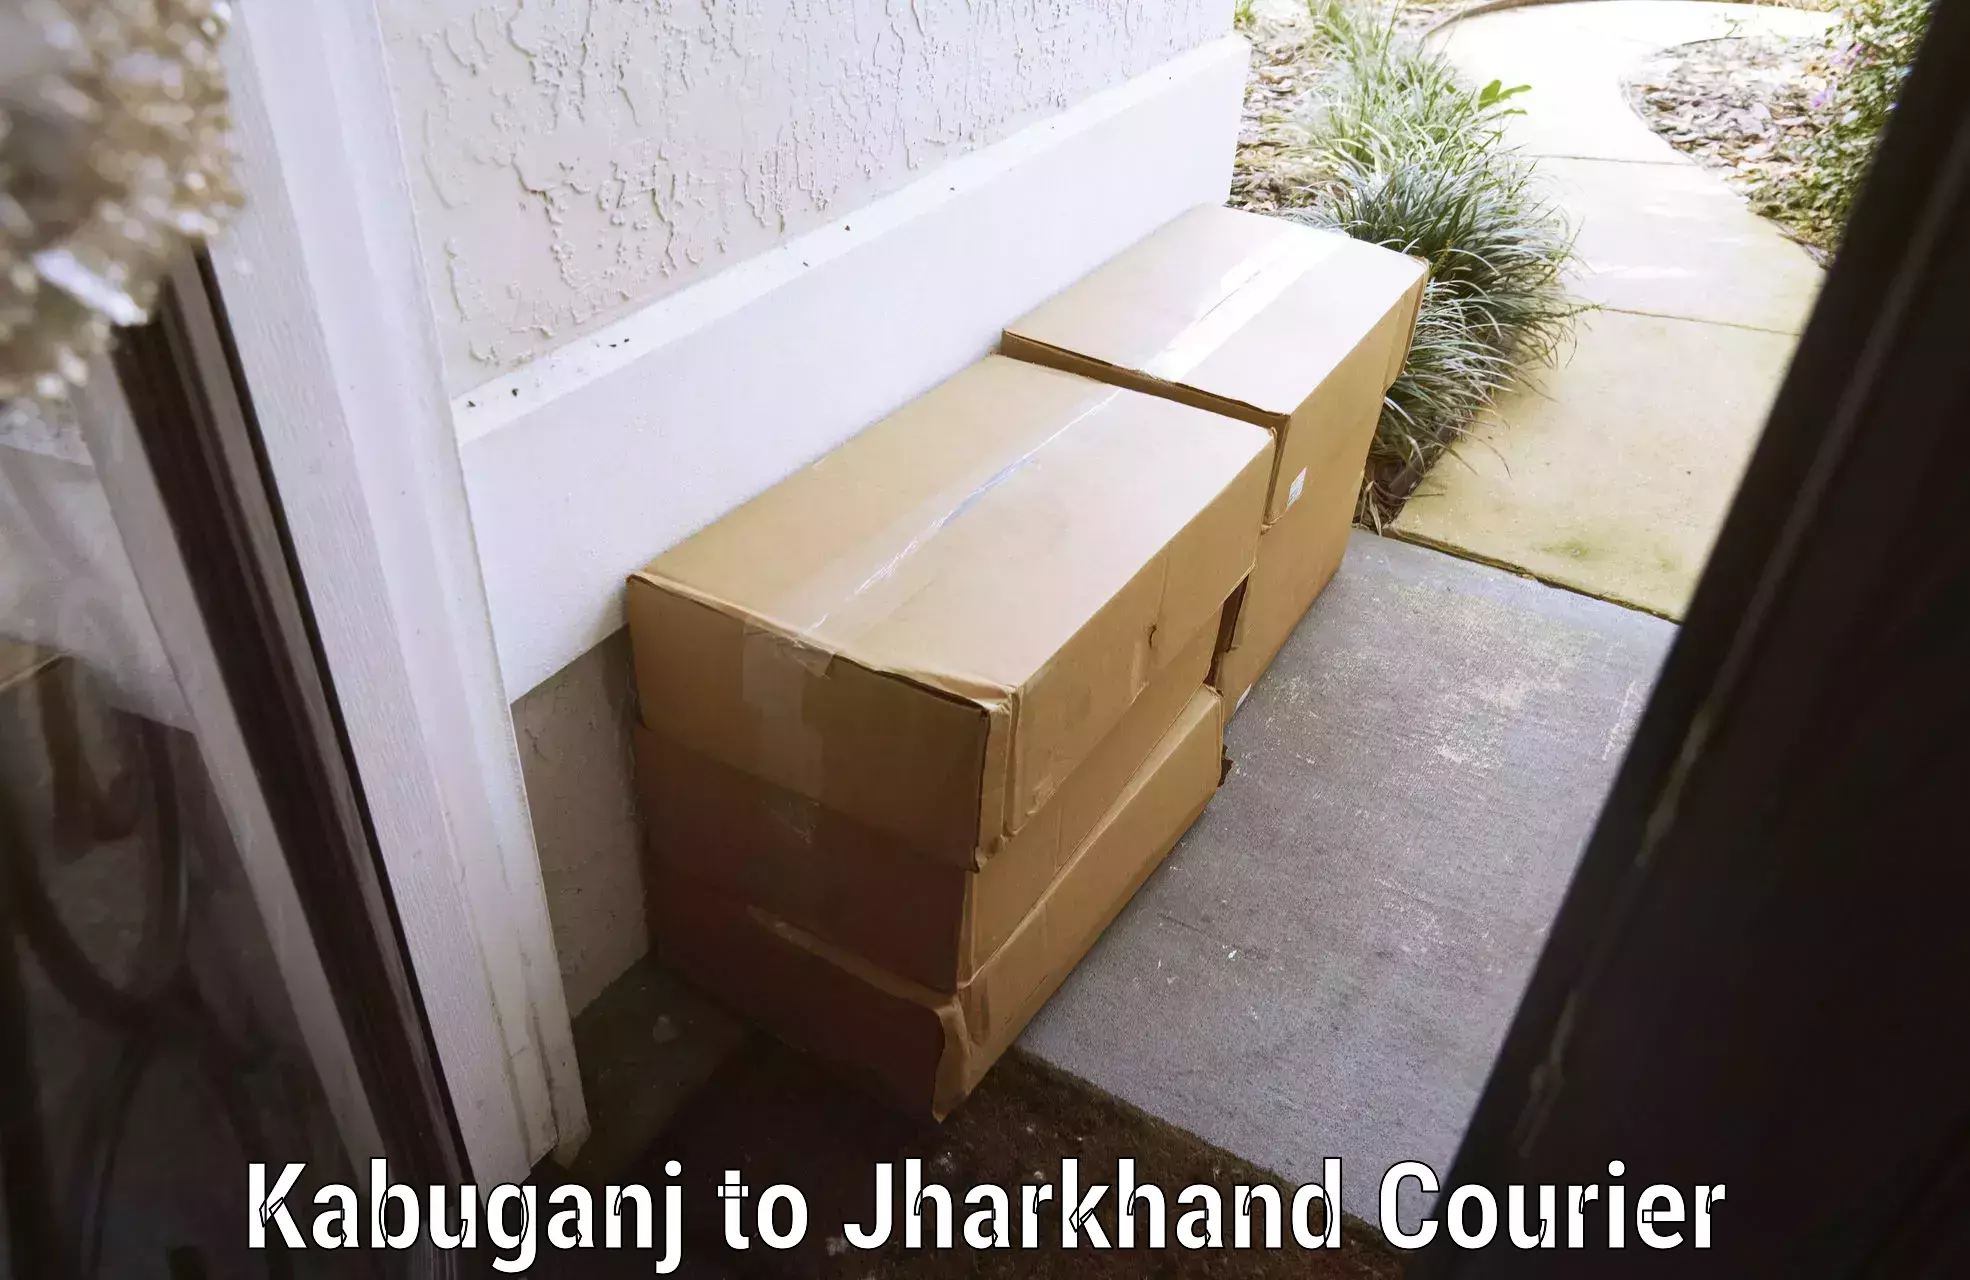 Urgent luggage shipment Kabuganj to Jharkhand